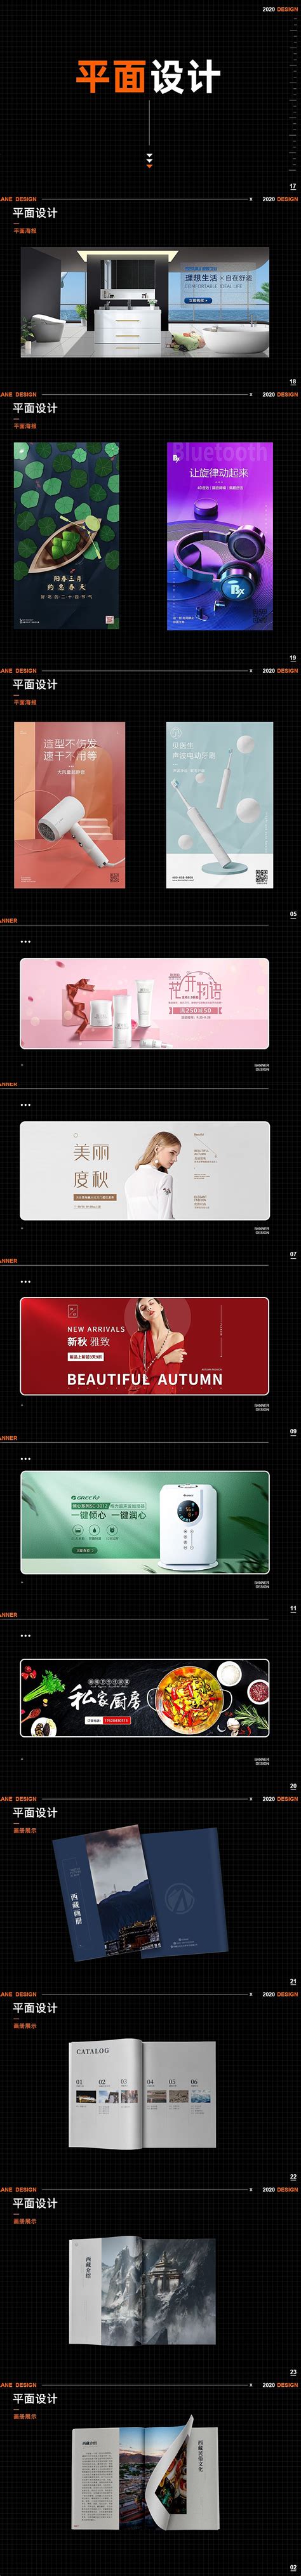 芜湖县城市logo征集评选结果发布公告-设计揭晓-设计大赛网